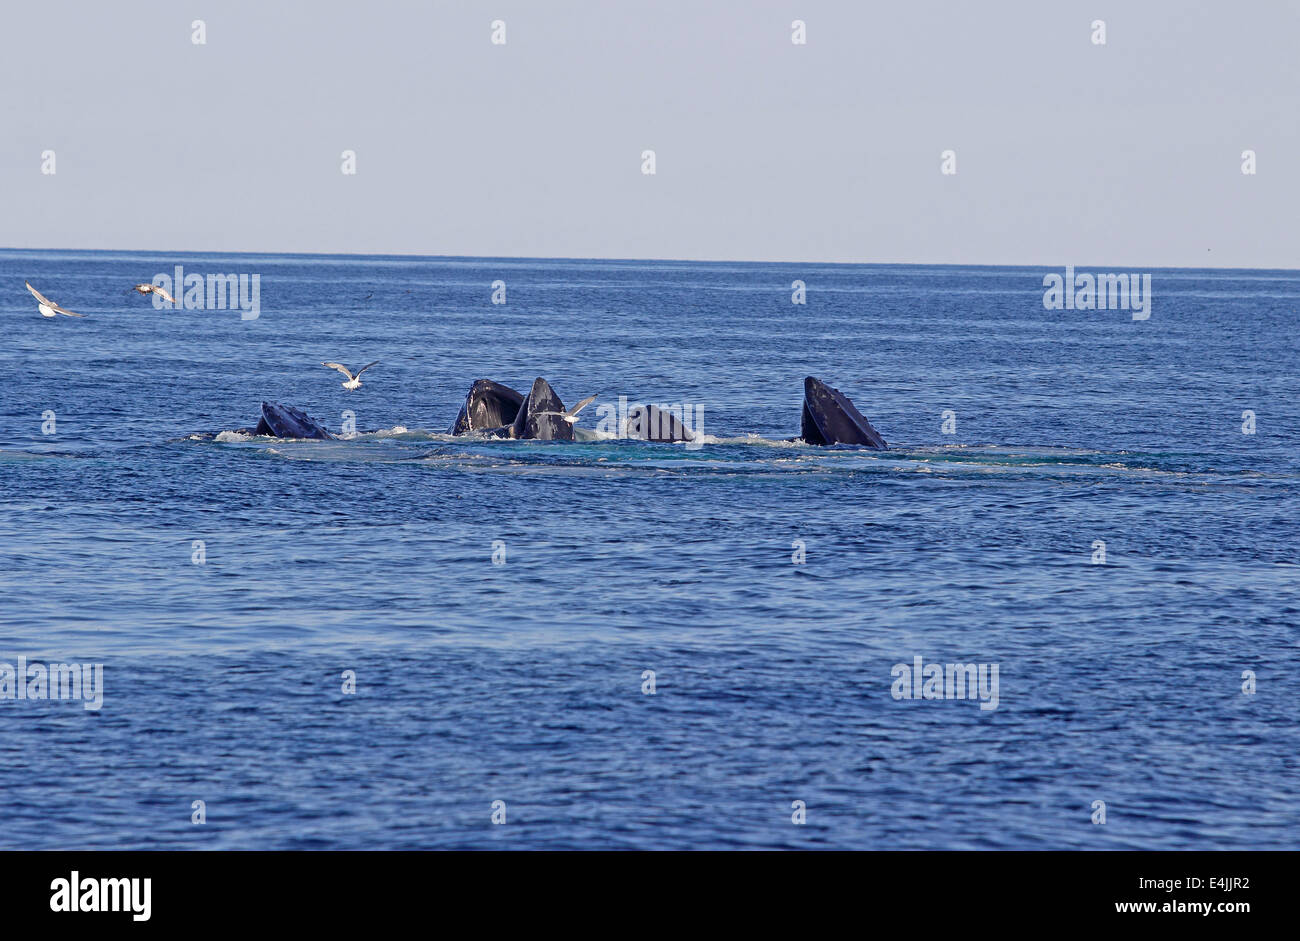 Les baleines à bosse (Megaptera novaeangliae) rupture d'alimentation Banque D'Images